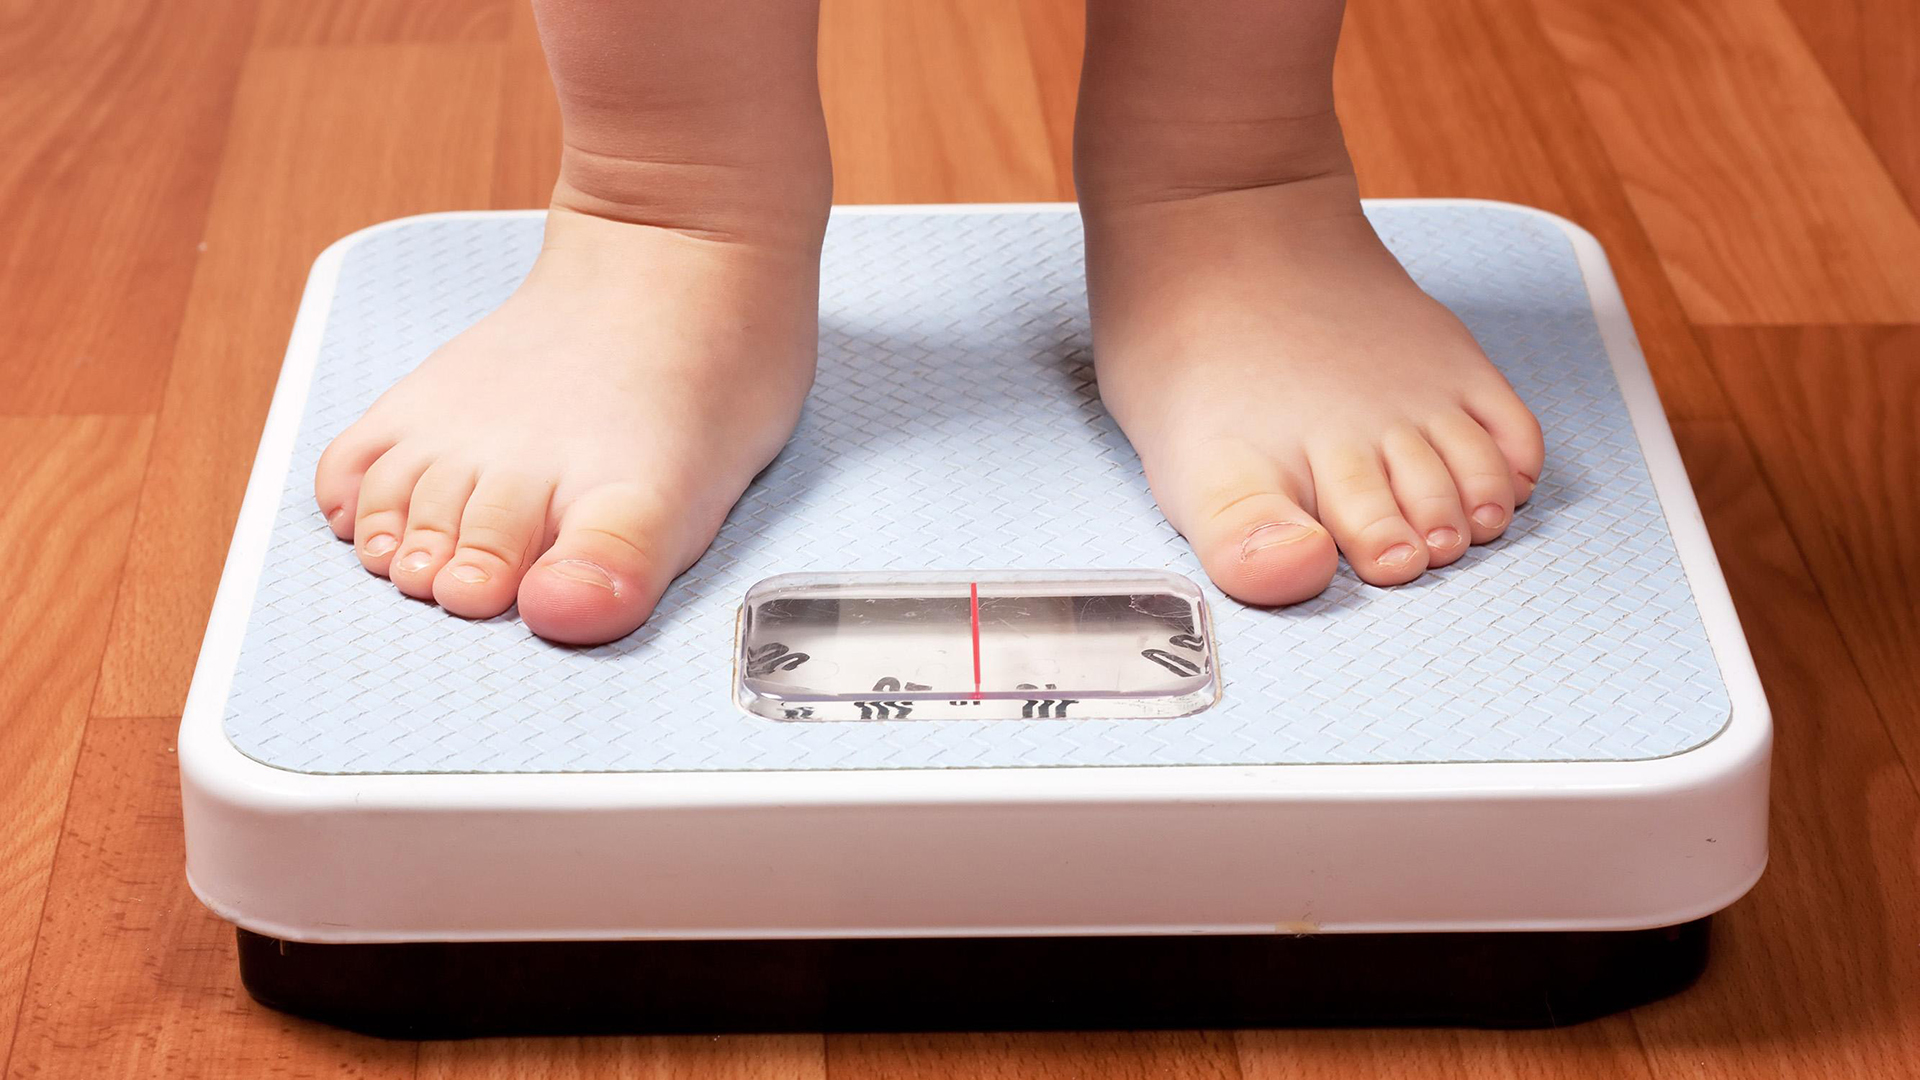 Este aumento de peso podría deberse a la pérdida de la influencia positiva que las escuelas tienden a tener sobre factores de riesgo clave, como horarios definidos de comida, actividad física y horario de sueño